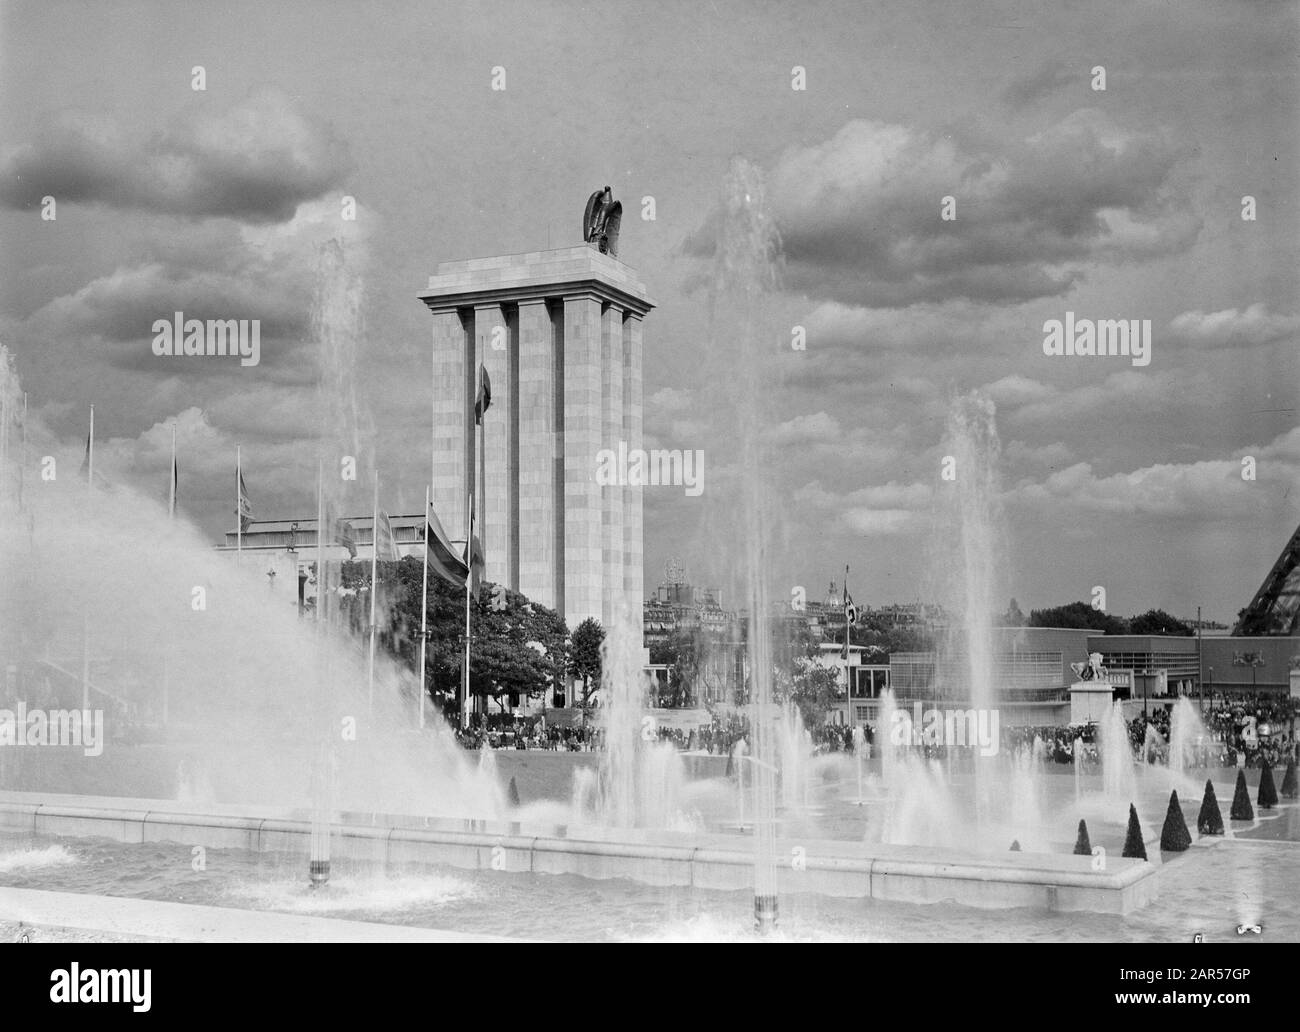 Exposition mondiale Paris 1937 Pavillon allemand avec fontaine, fontaines et drapeaux Date : 1937 lieu : France, Paris mots clés : architecture, fontaines, drapeaux, expositions mondiales Banque D'Images